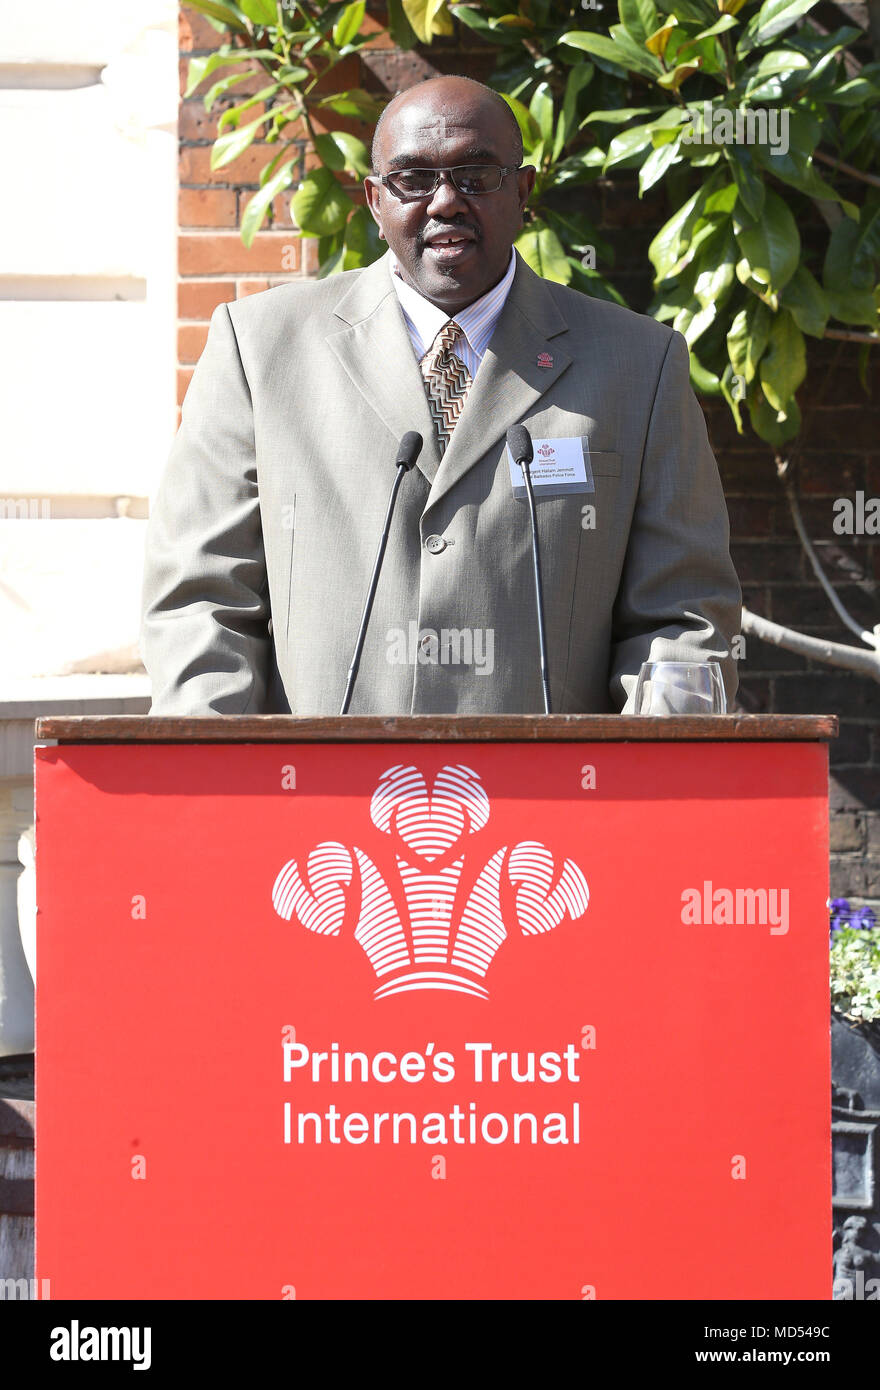 Le sergent Hallam Jemmott, de la Police royale de la Barbade parle parle lors d'une réception pour le Prince's Trust International, de St James's Palace State Apartments à Londres, au cours de la réunion des chefs de gouvernement du Commonwealth. Banque D'Images